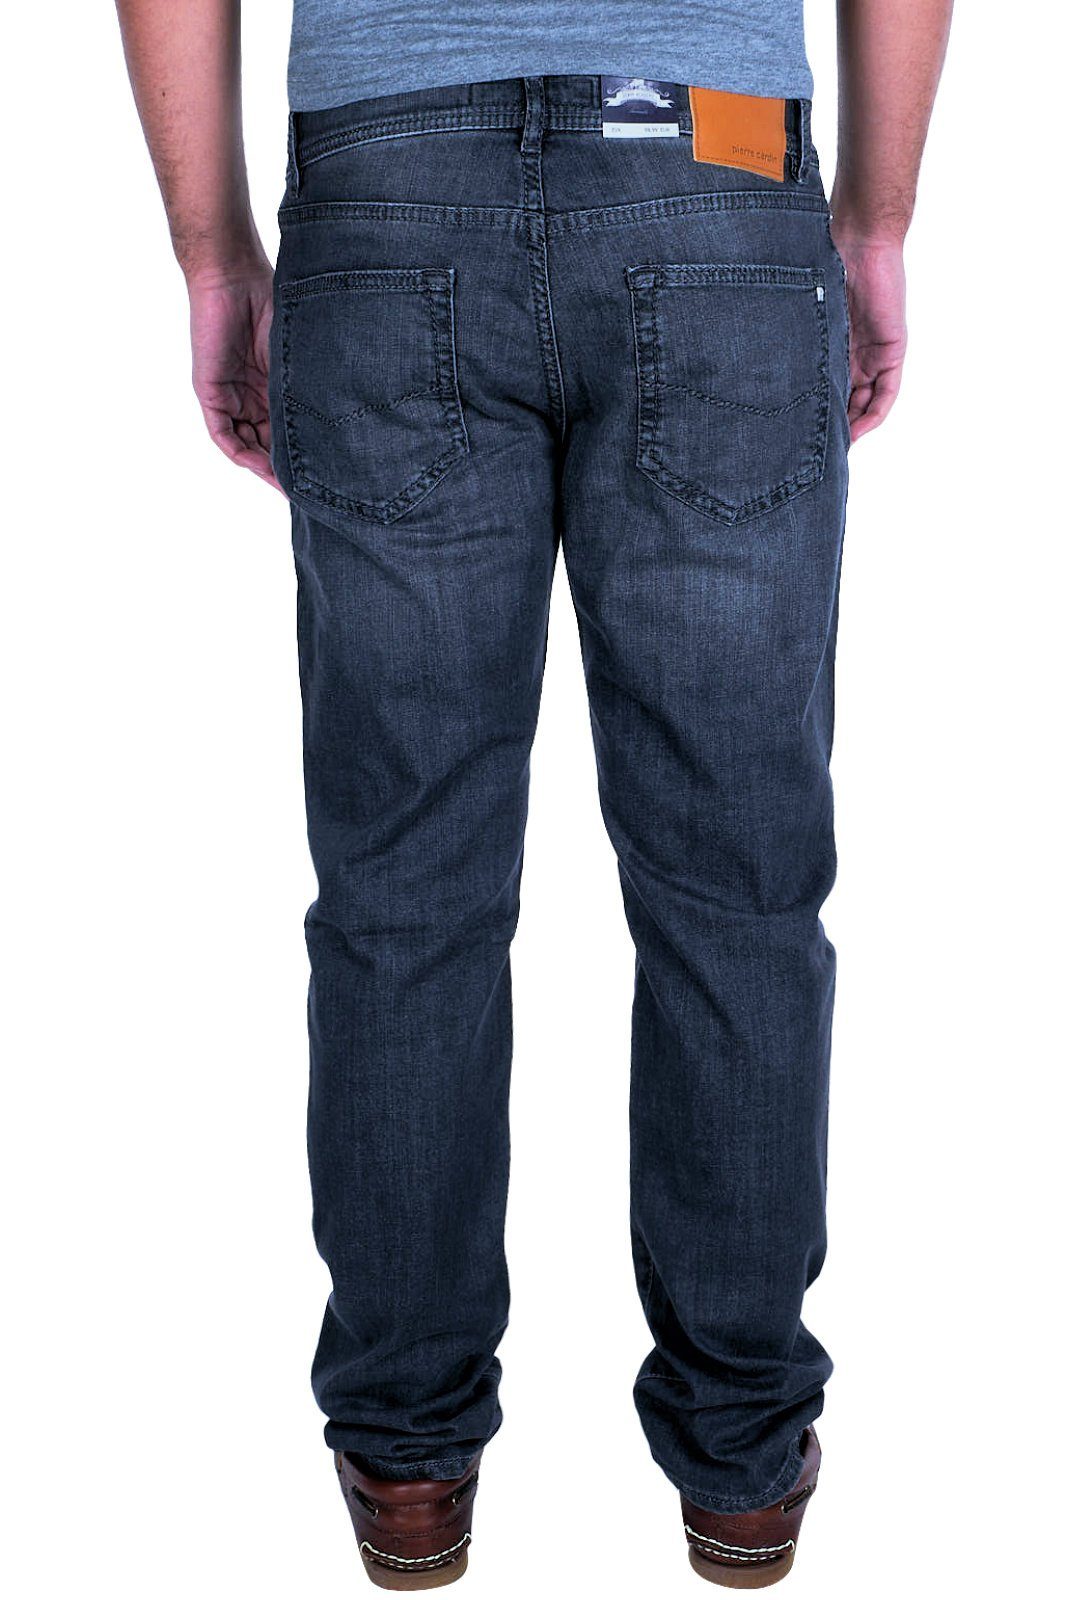 Pierre Cardin beige Straight-Jeans